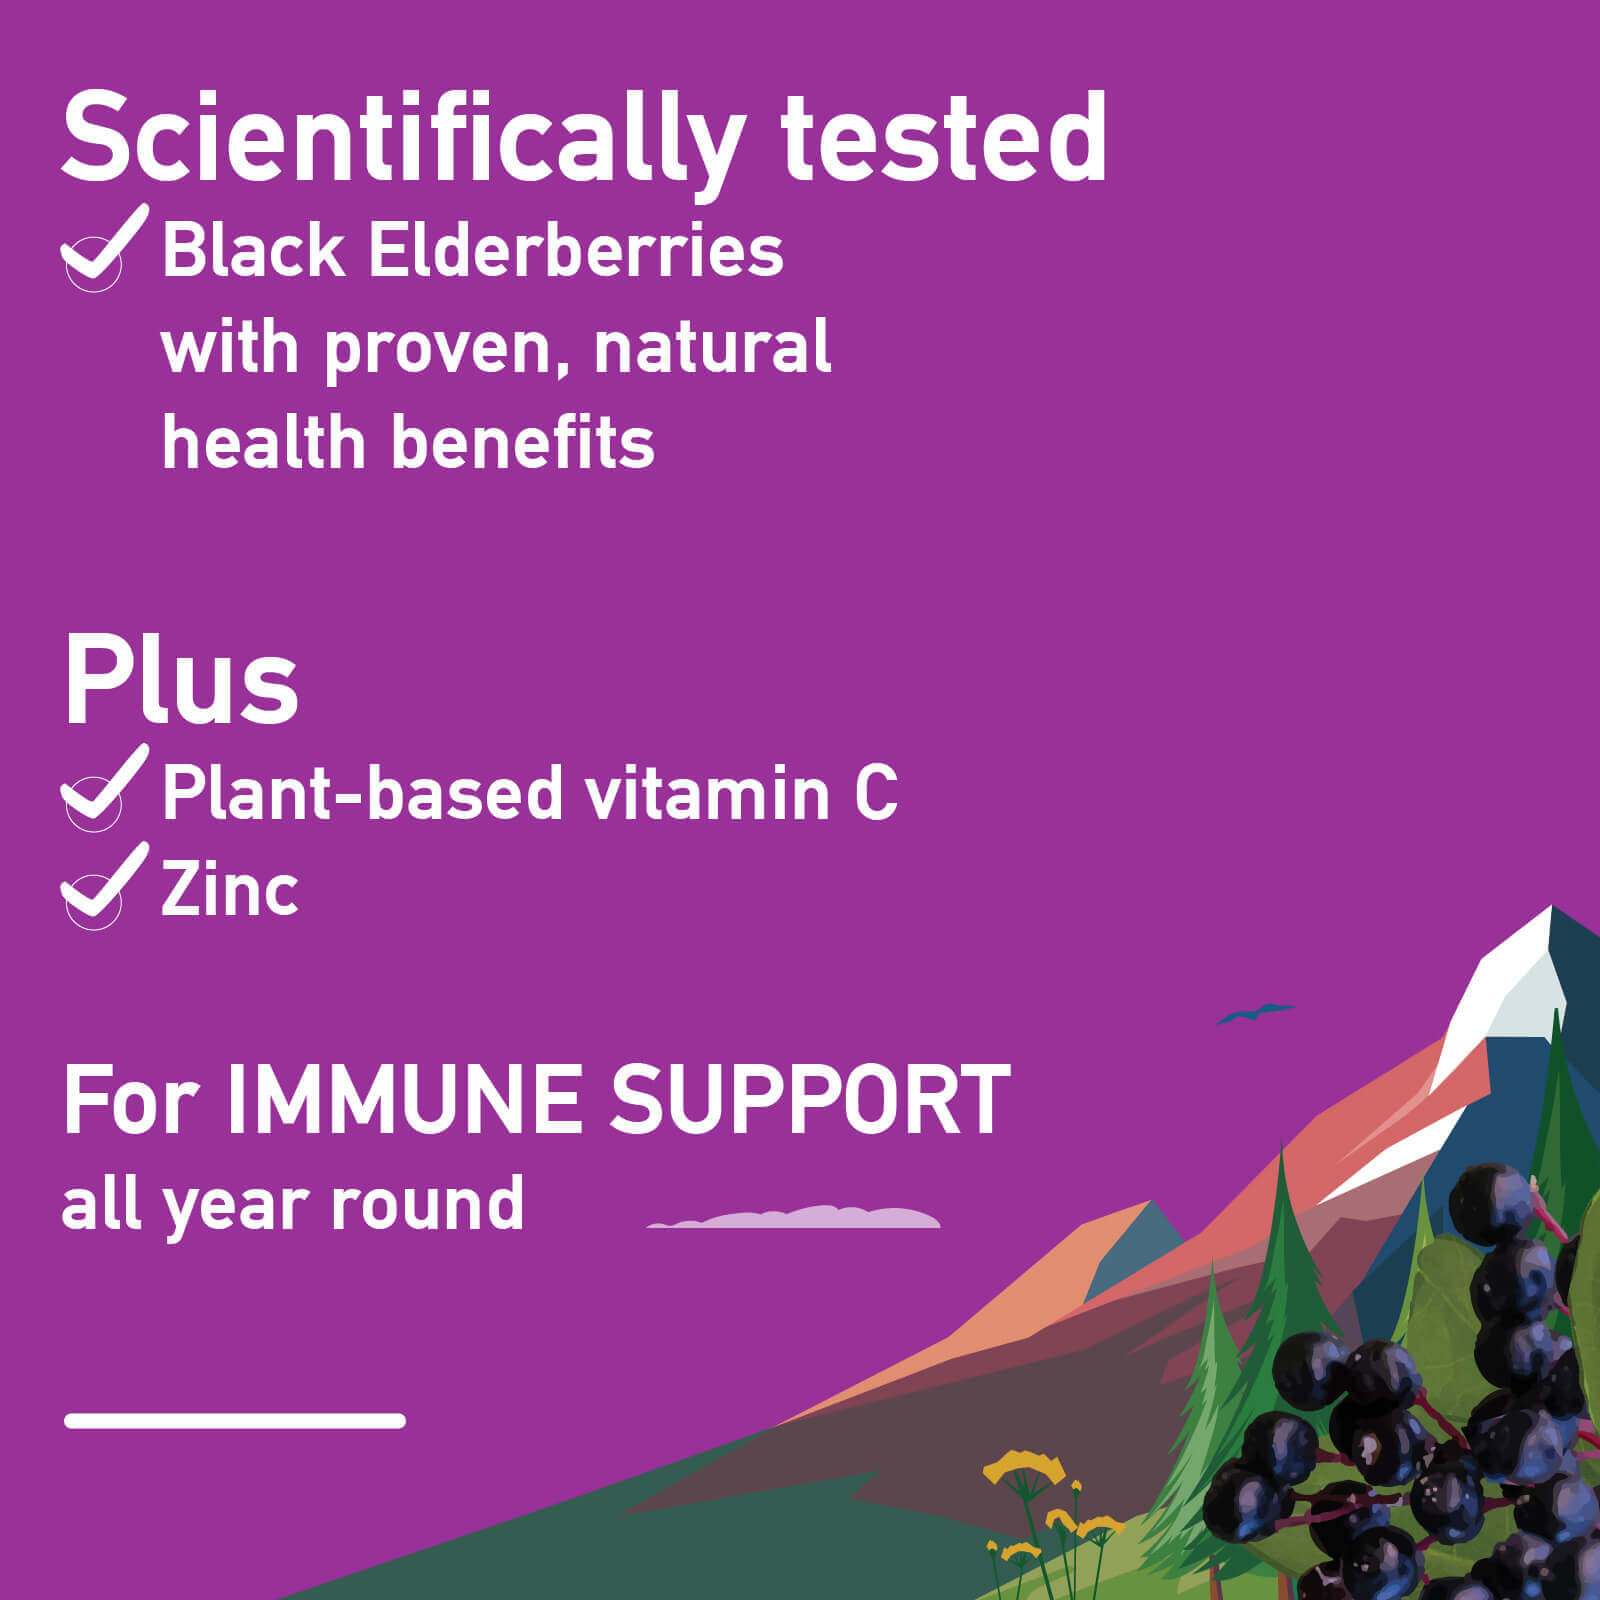 Immune support vitamin c and zinc